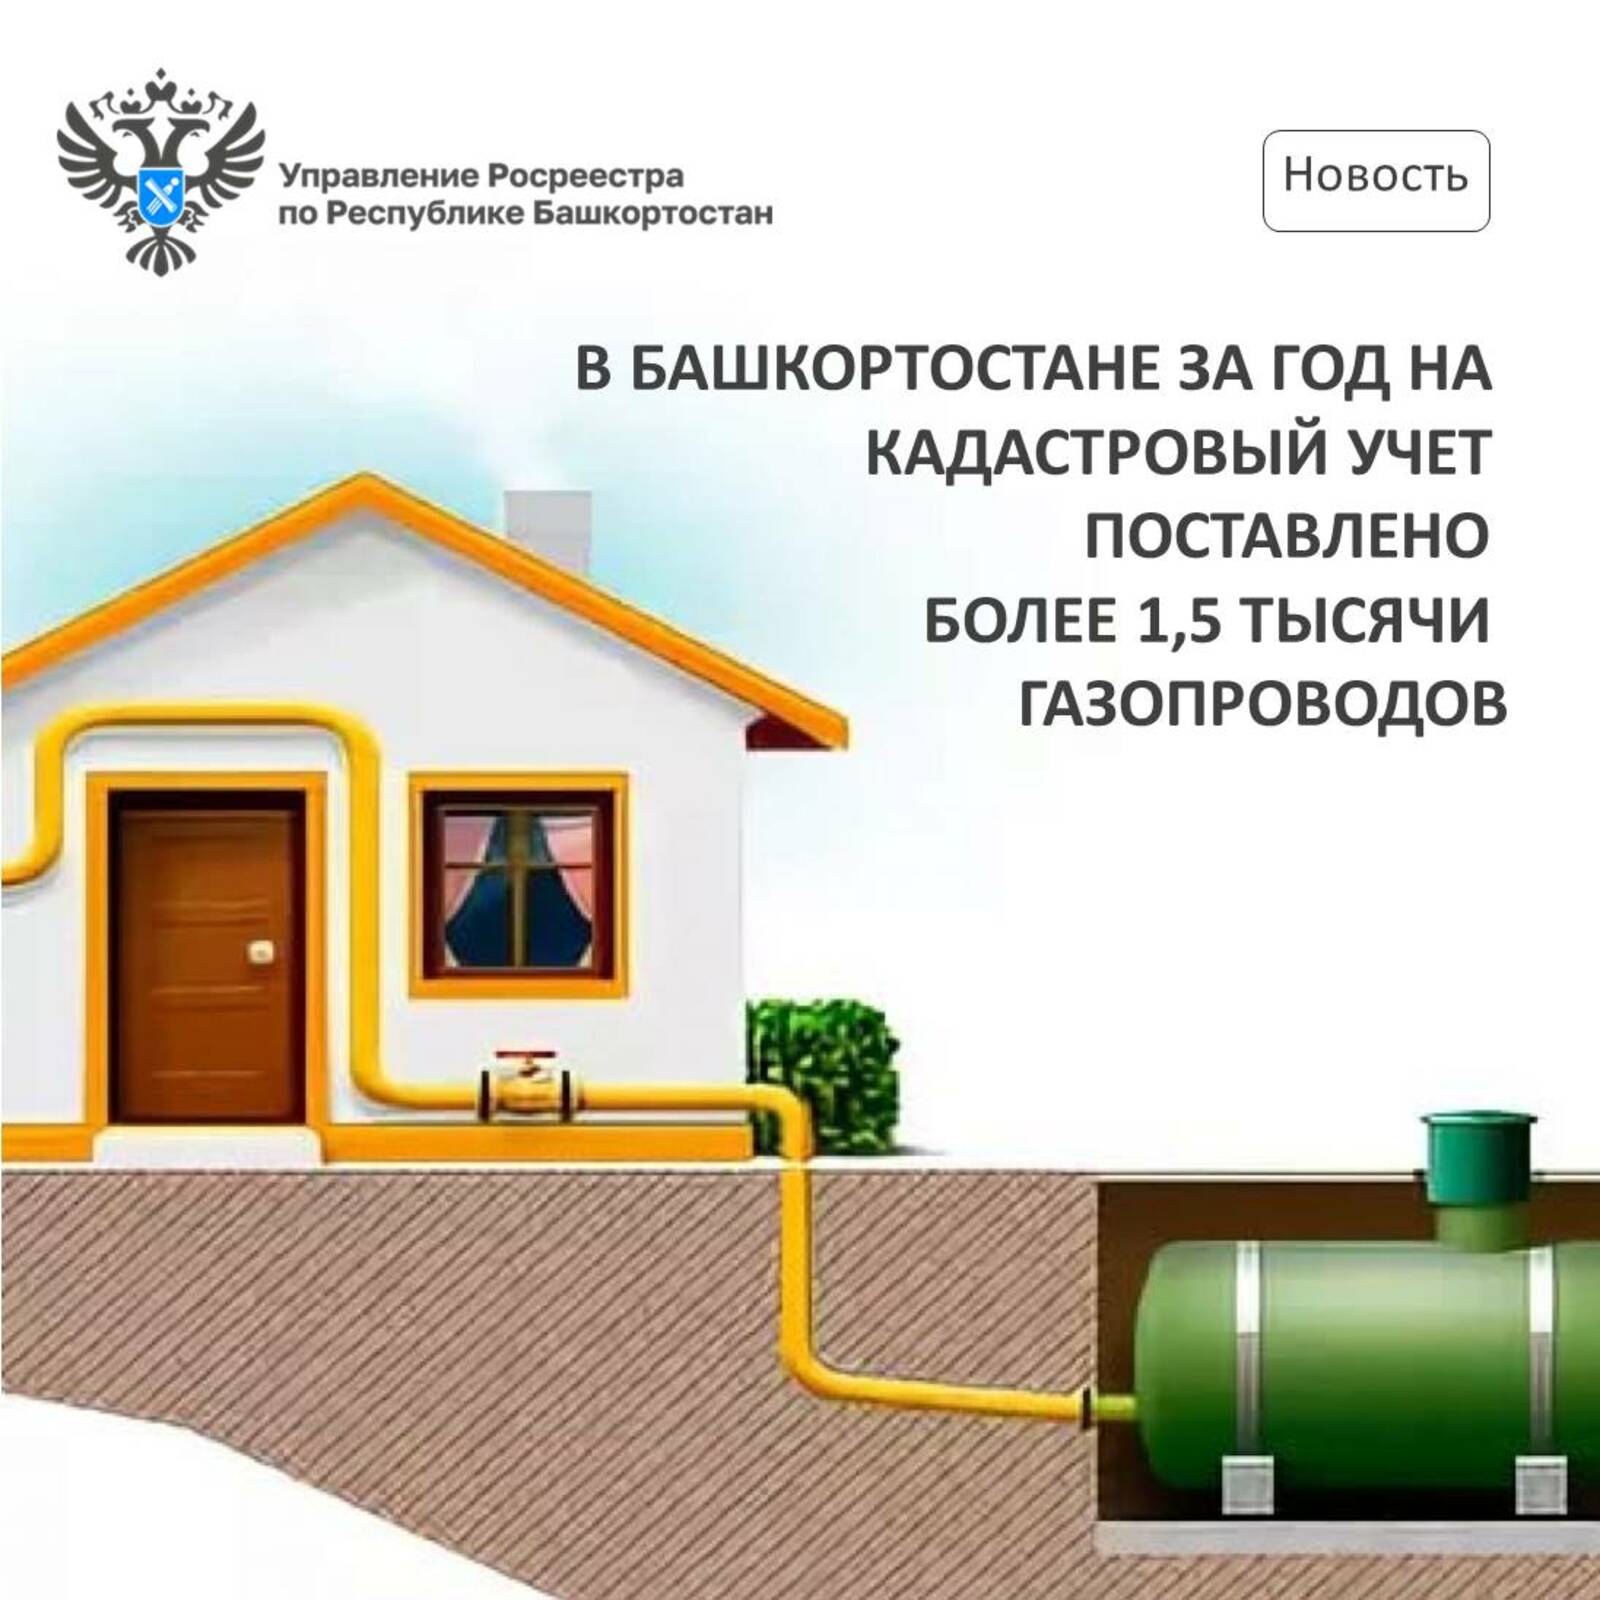 В Башкортостане за год на учет поставлено более 1,5 тысячи газопроводов